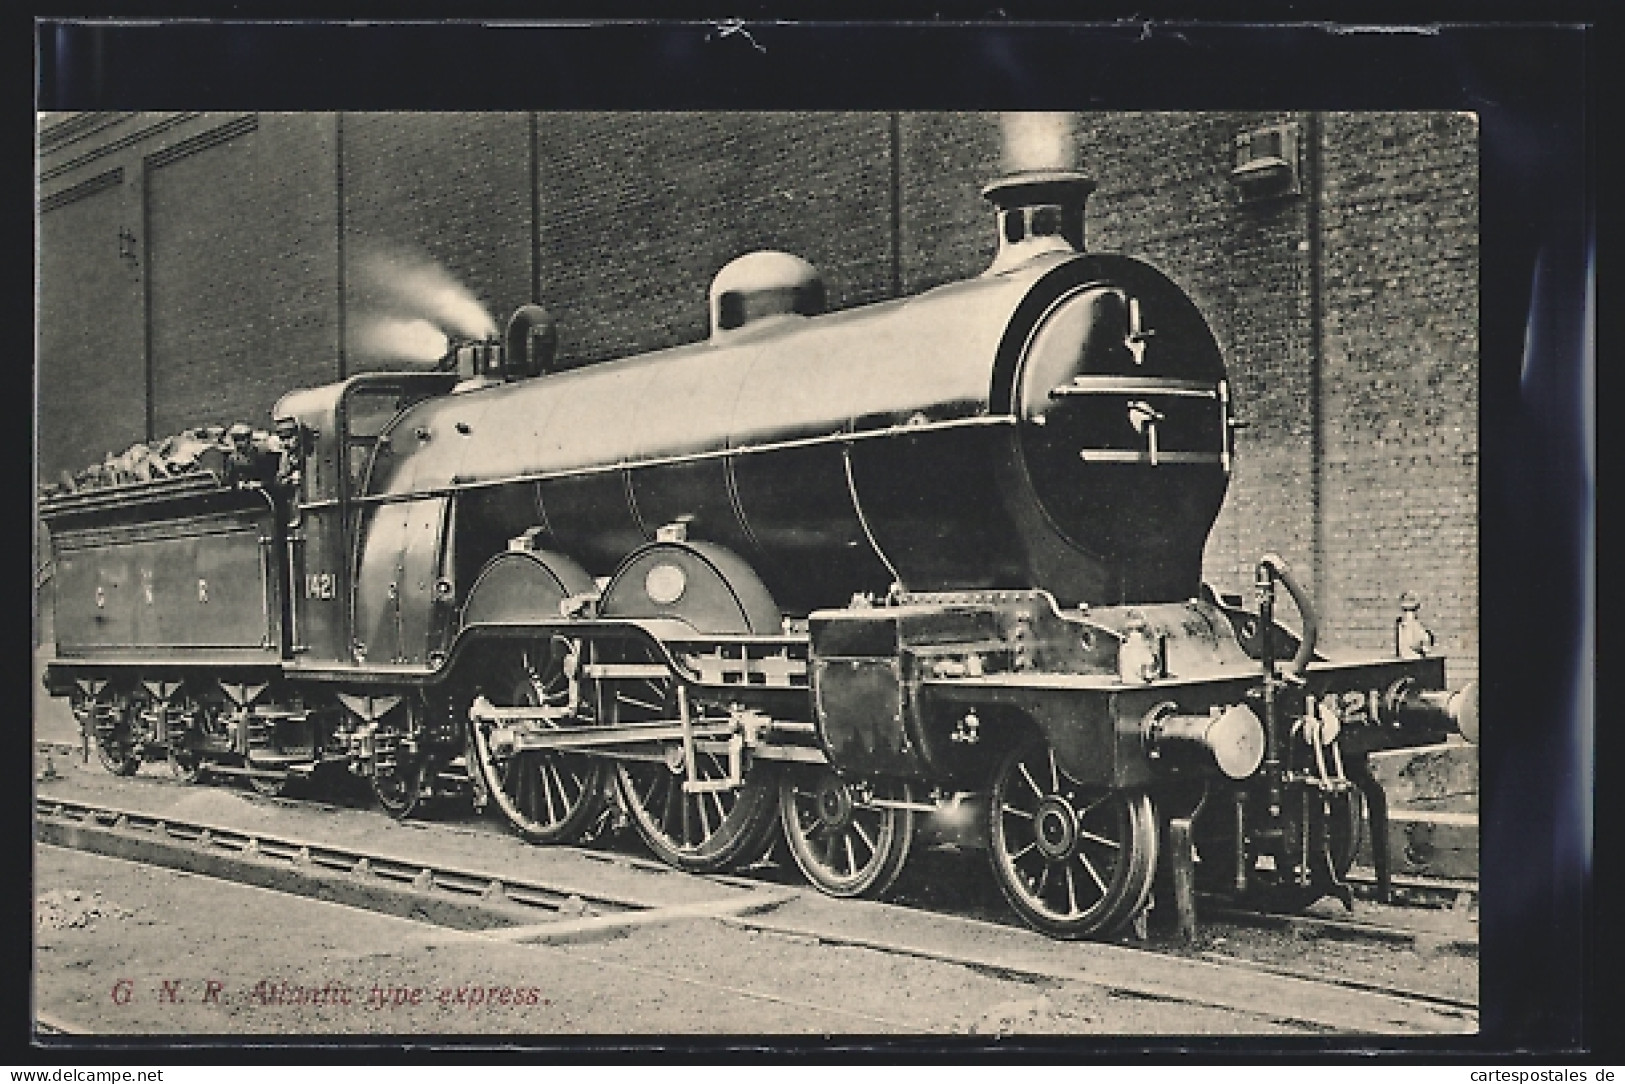 Pc G. N. R. Atlantic Type Express, Englische Eisenbahn  - Eisenbahnen